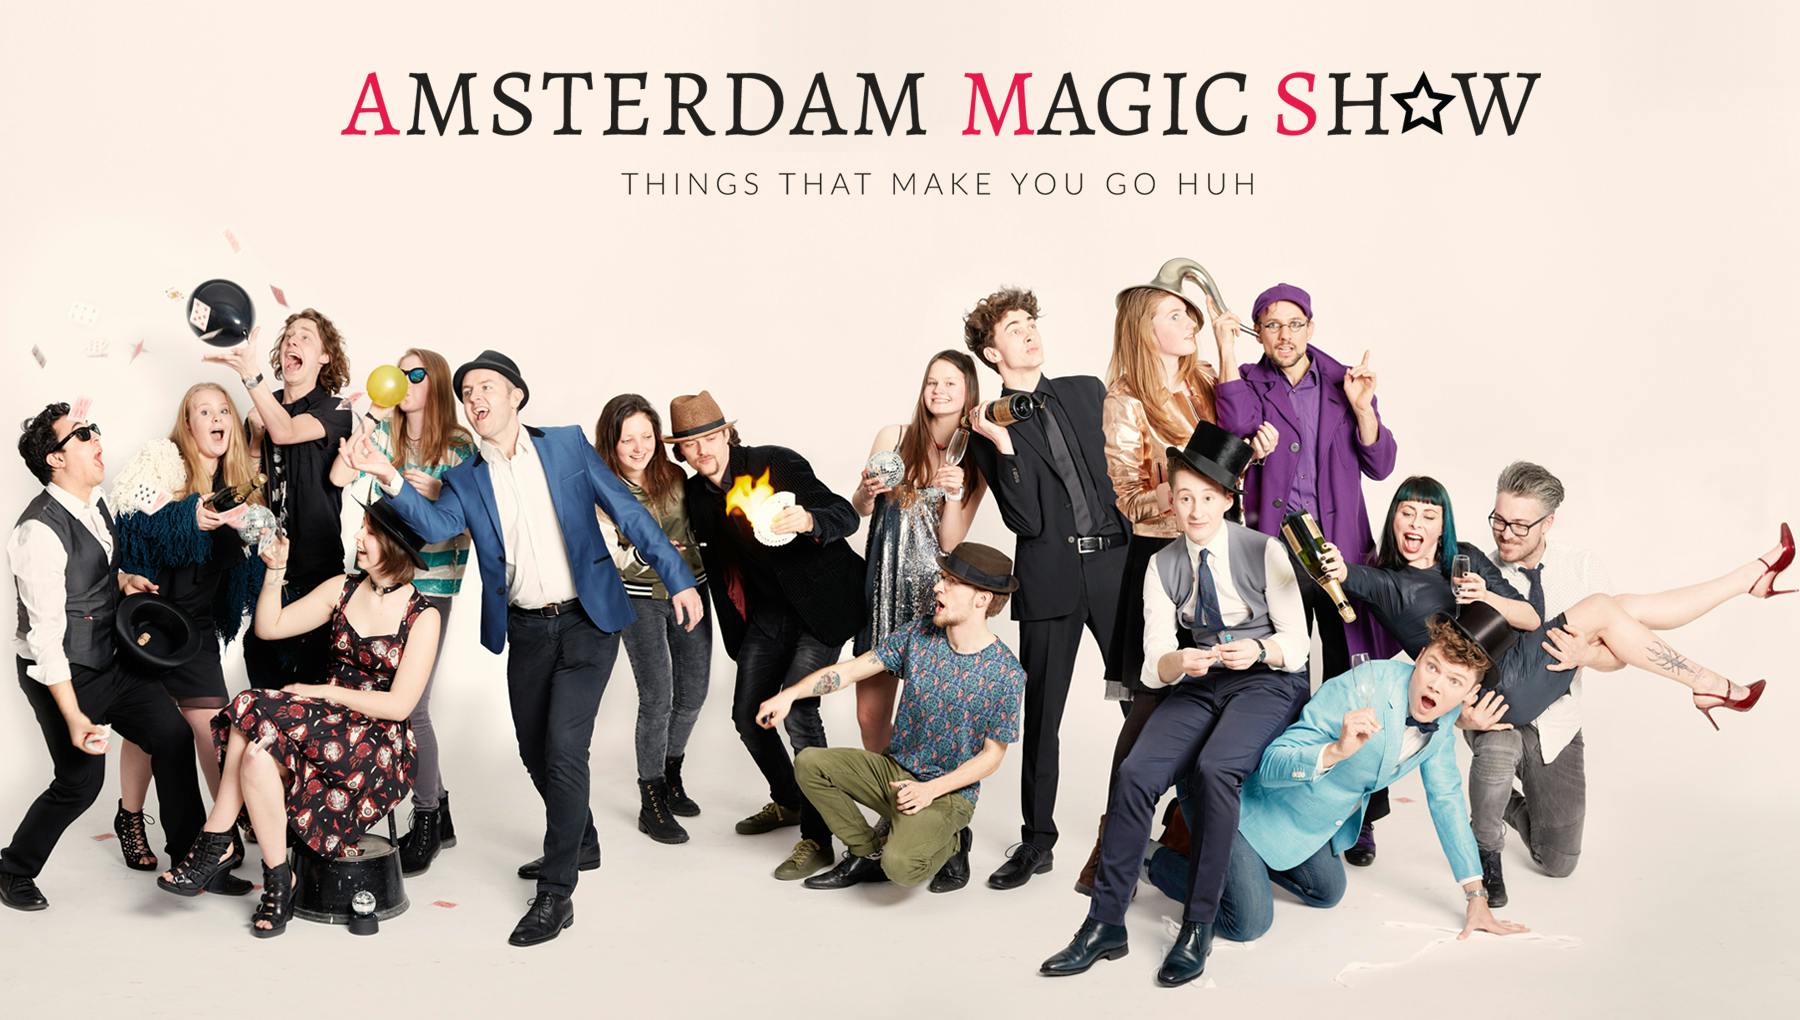 Biglietto per lo spettacolo di magia di Amsterdam